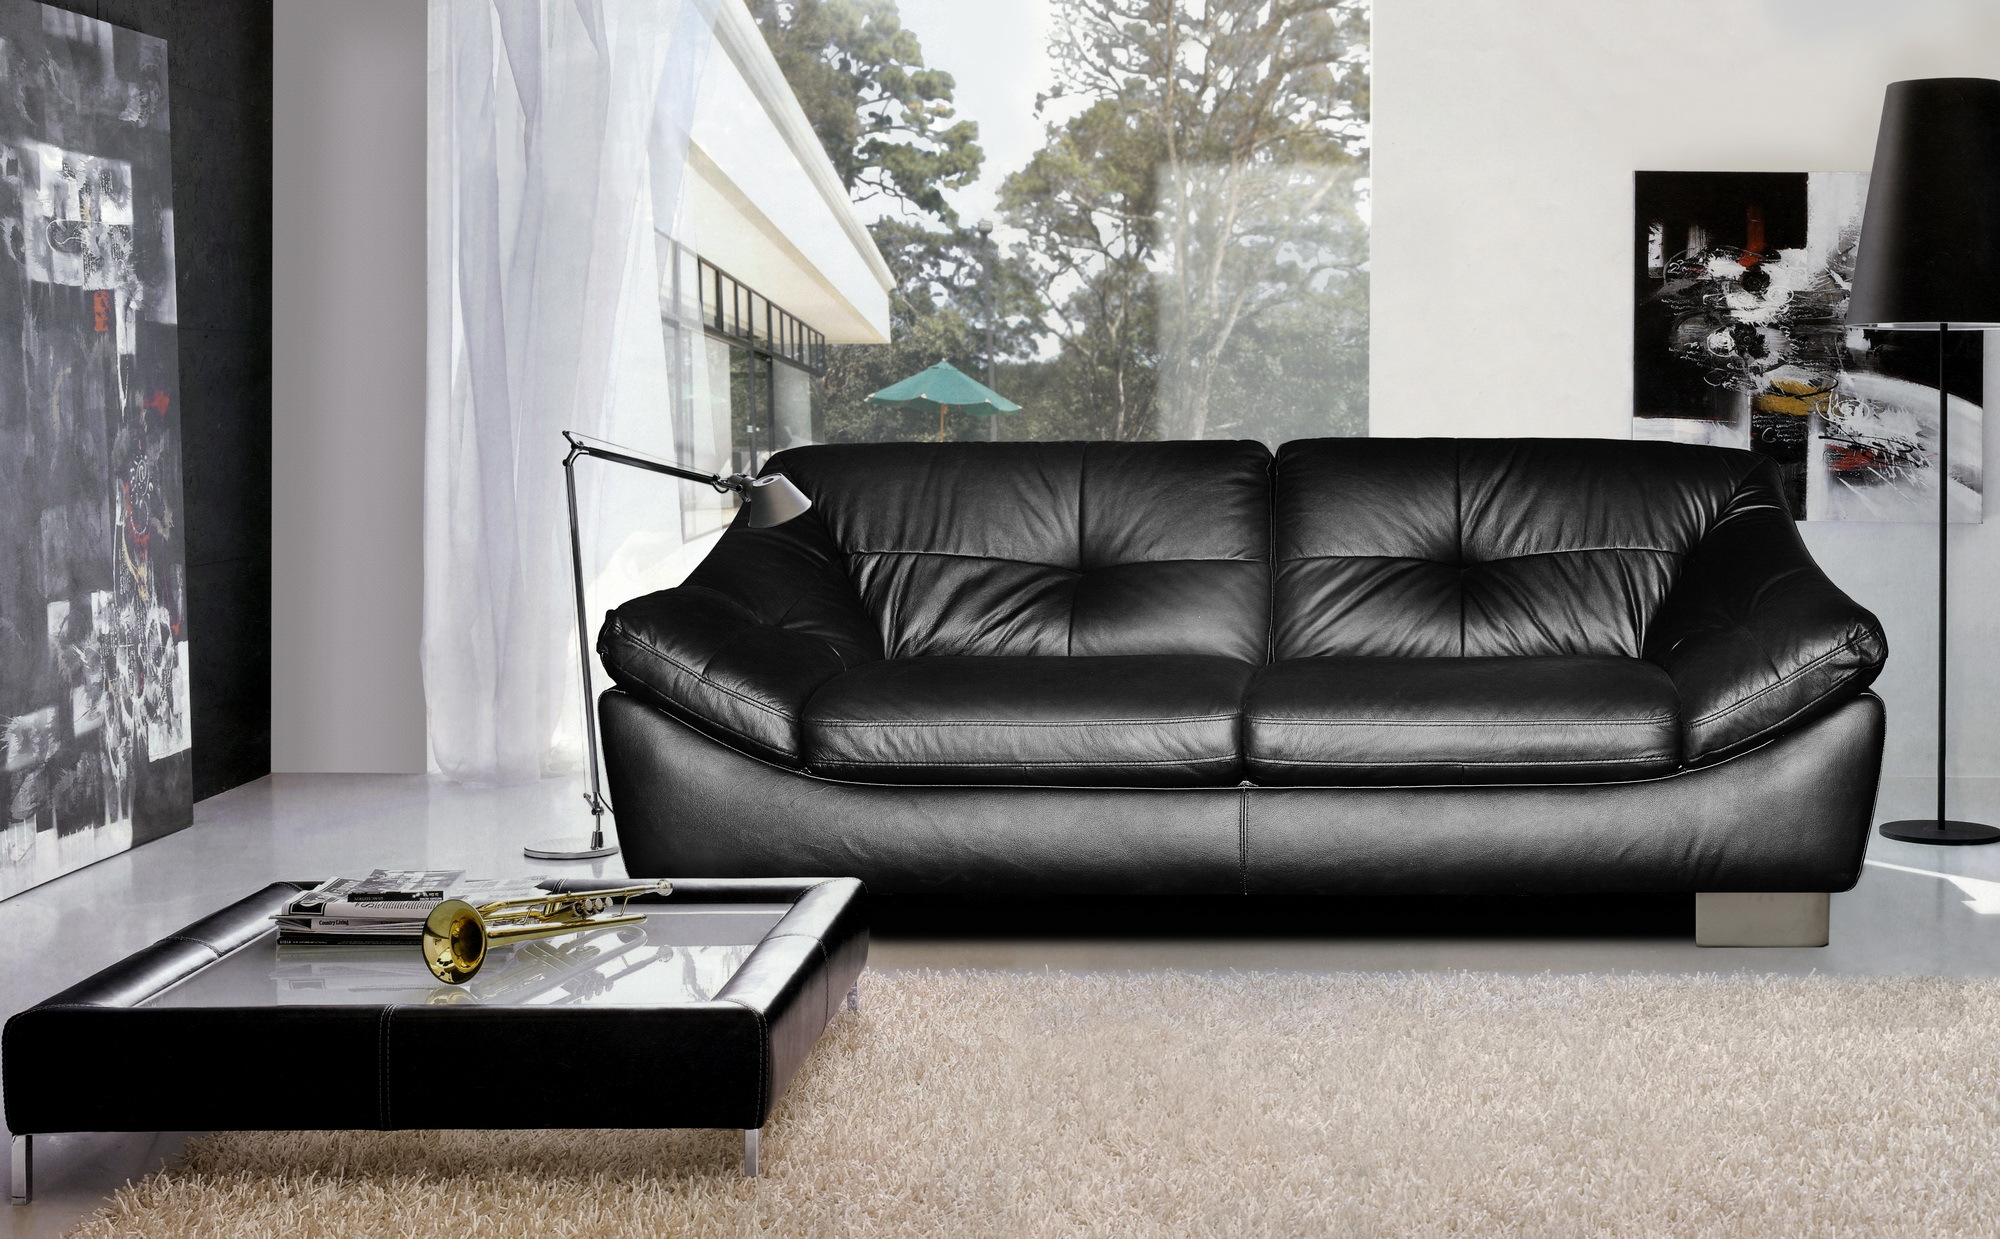 кожаный диван в интерьере фото